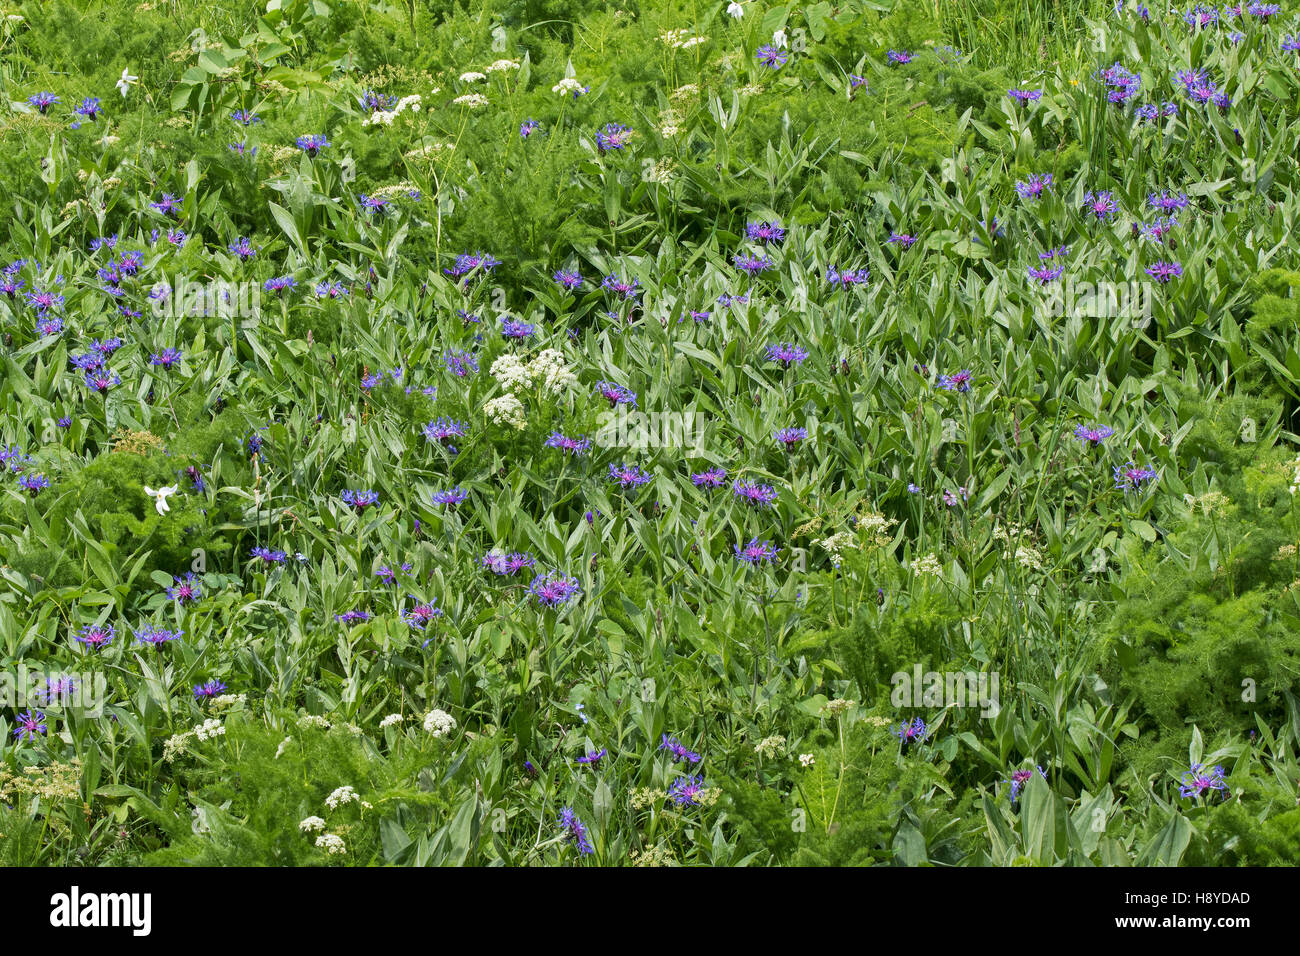 Bleuet des montagnes centaurea montana et Spignel Meum athamanticum Vallon de Combeau Parc Naturel Régional du Vercors Vercors France Juin 2016 Banque D'Images